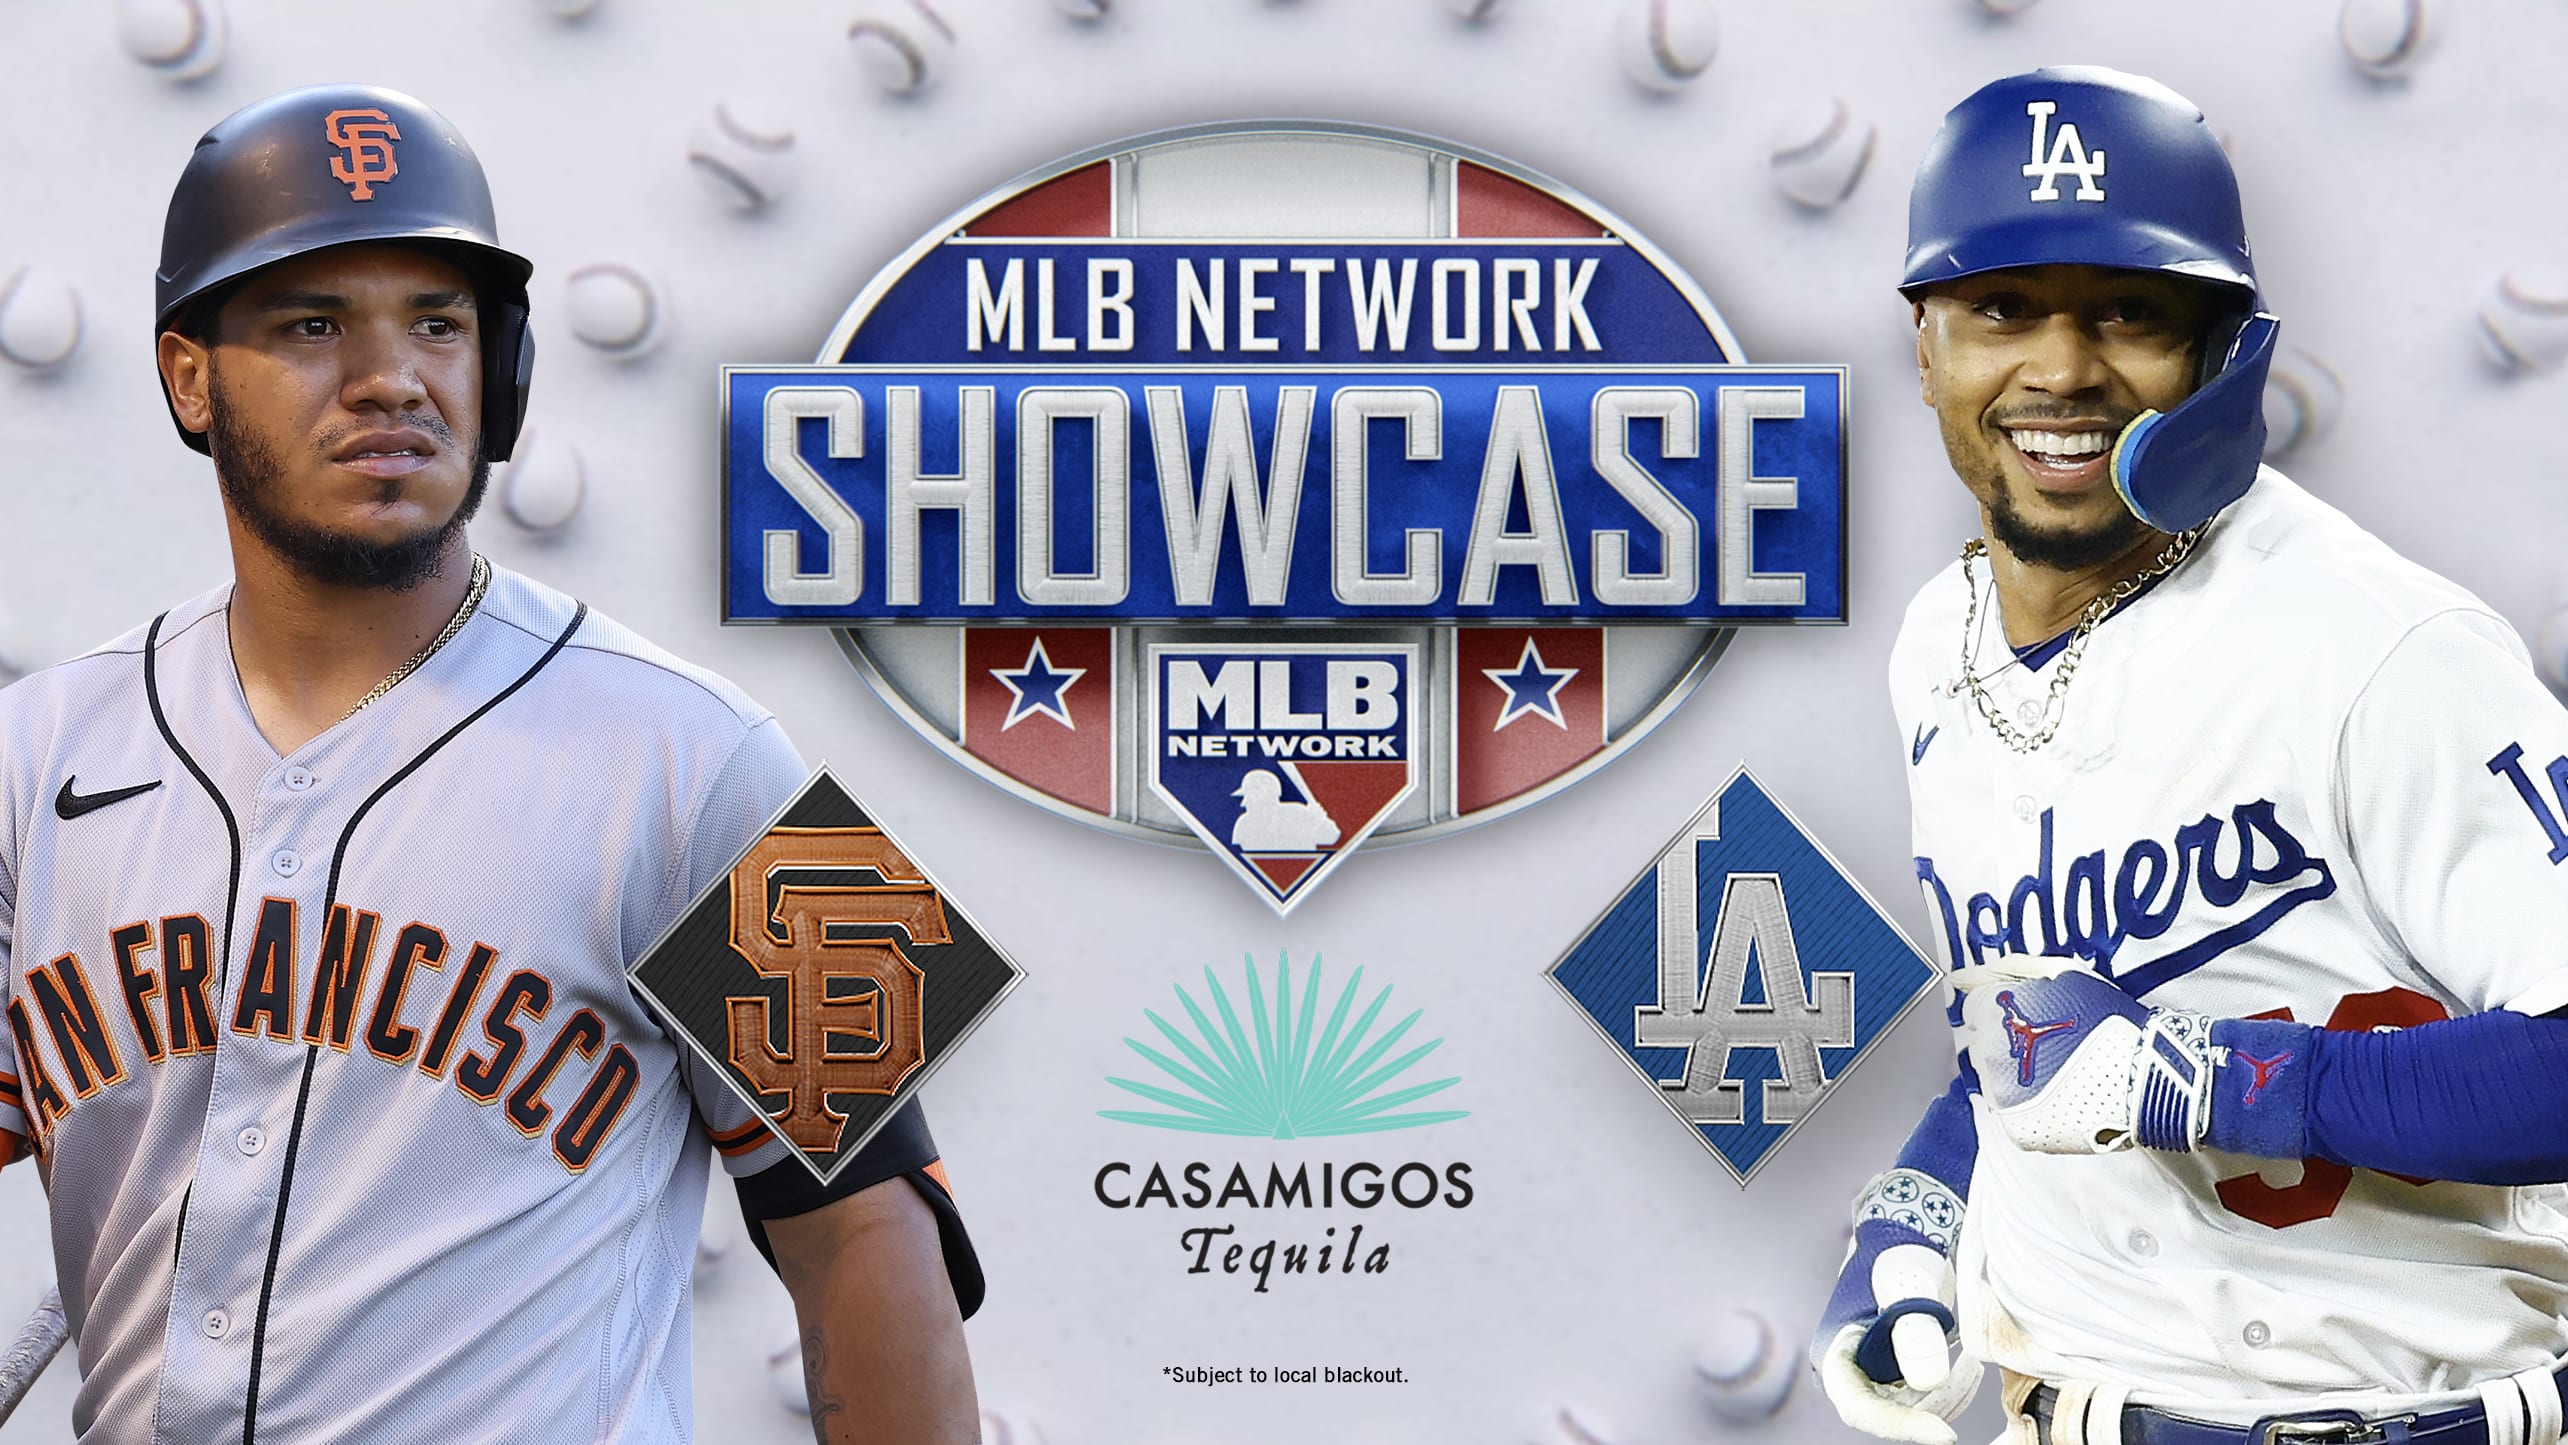 Giants vs. Dodgers on MLB Network Showcase